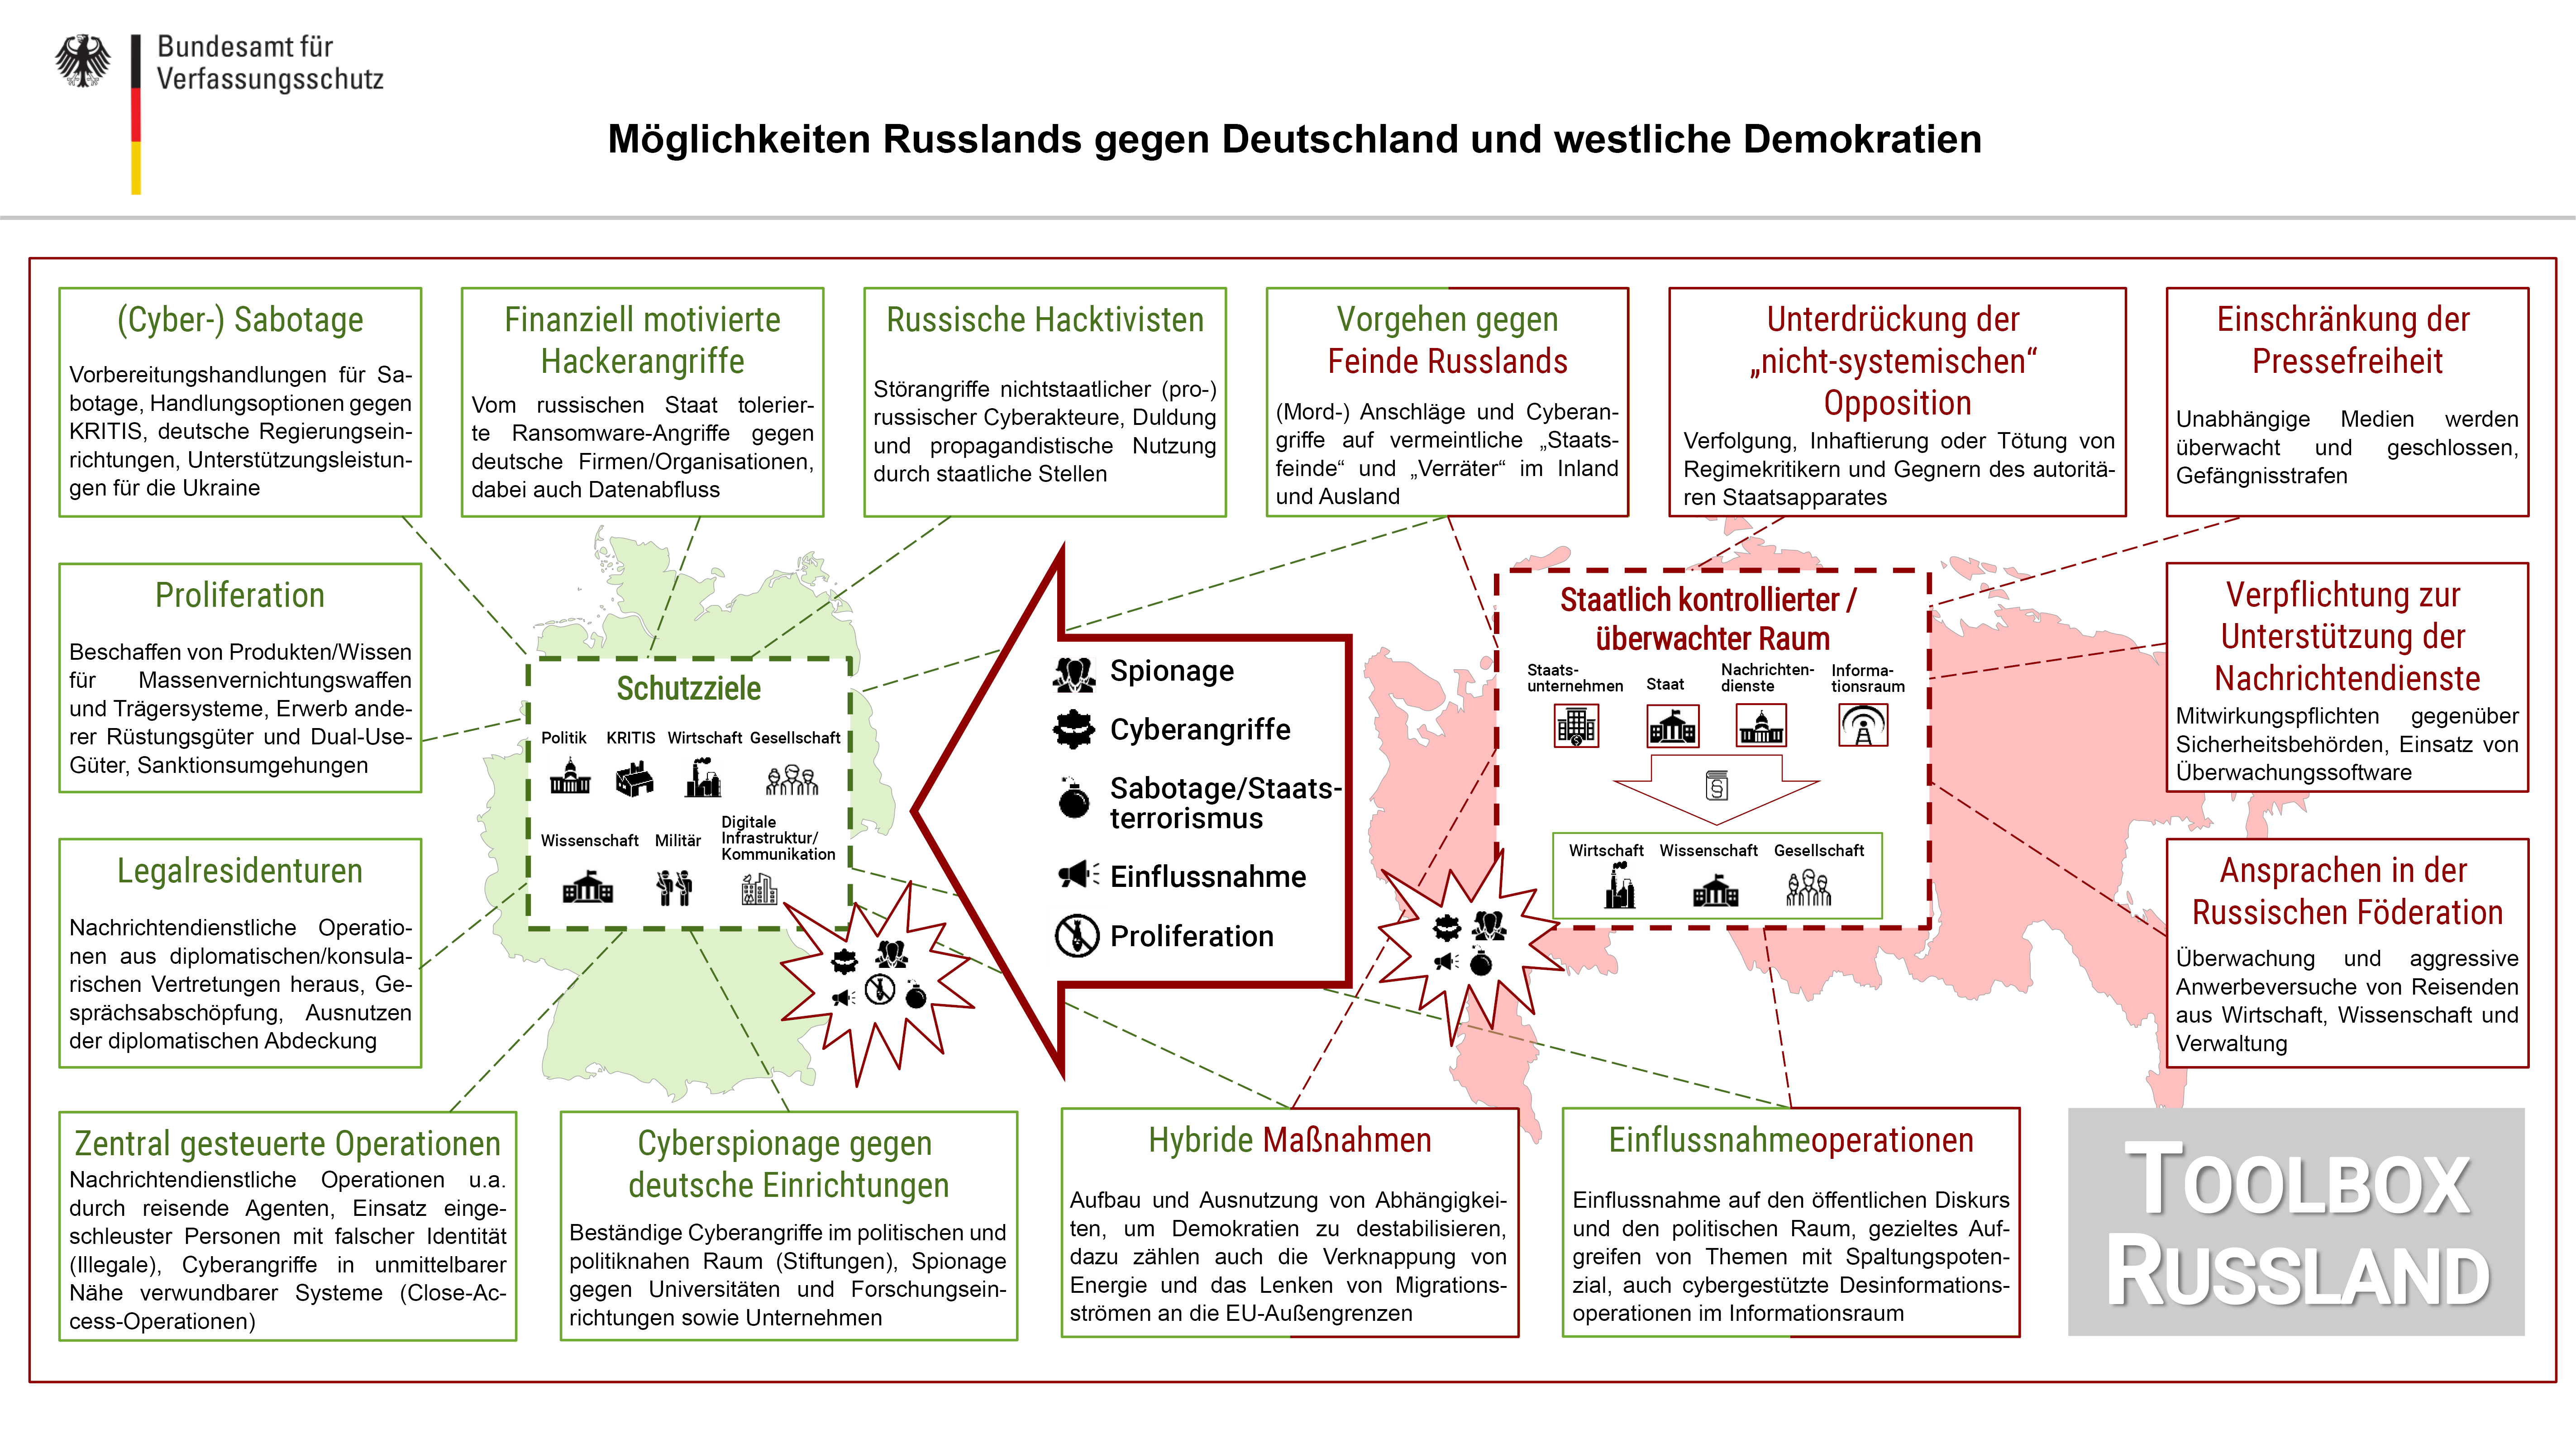 Die Grafik zeigt Russlands nachrichtendienstliche Werkzeuge gegen Deutschland.